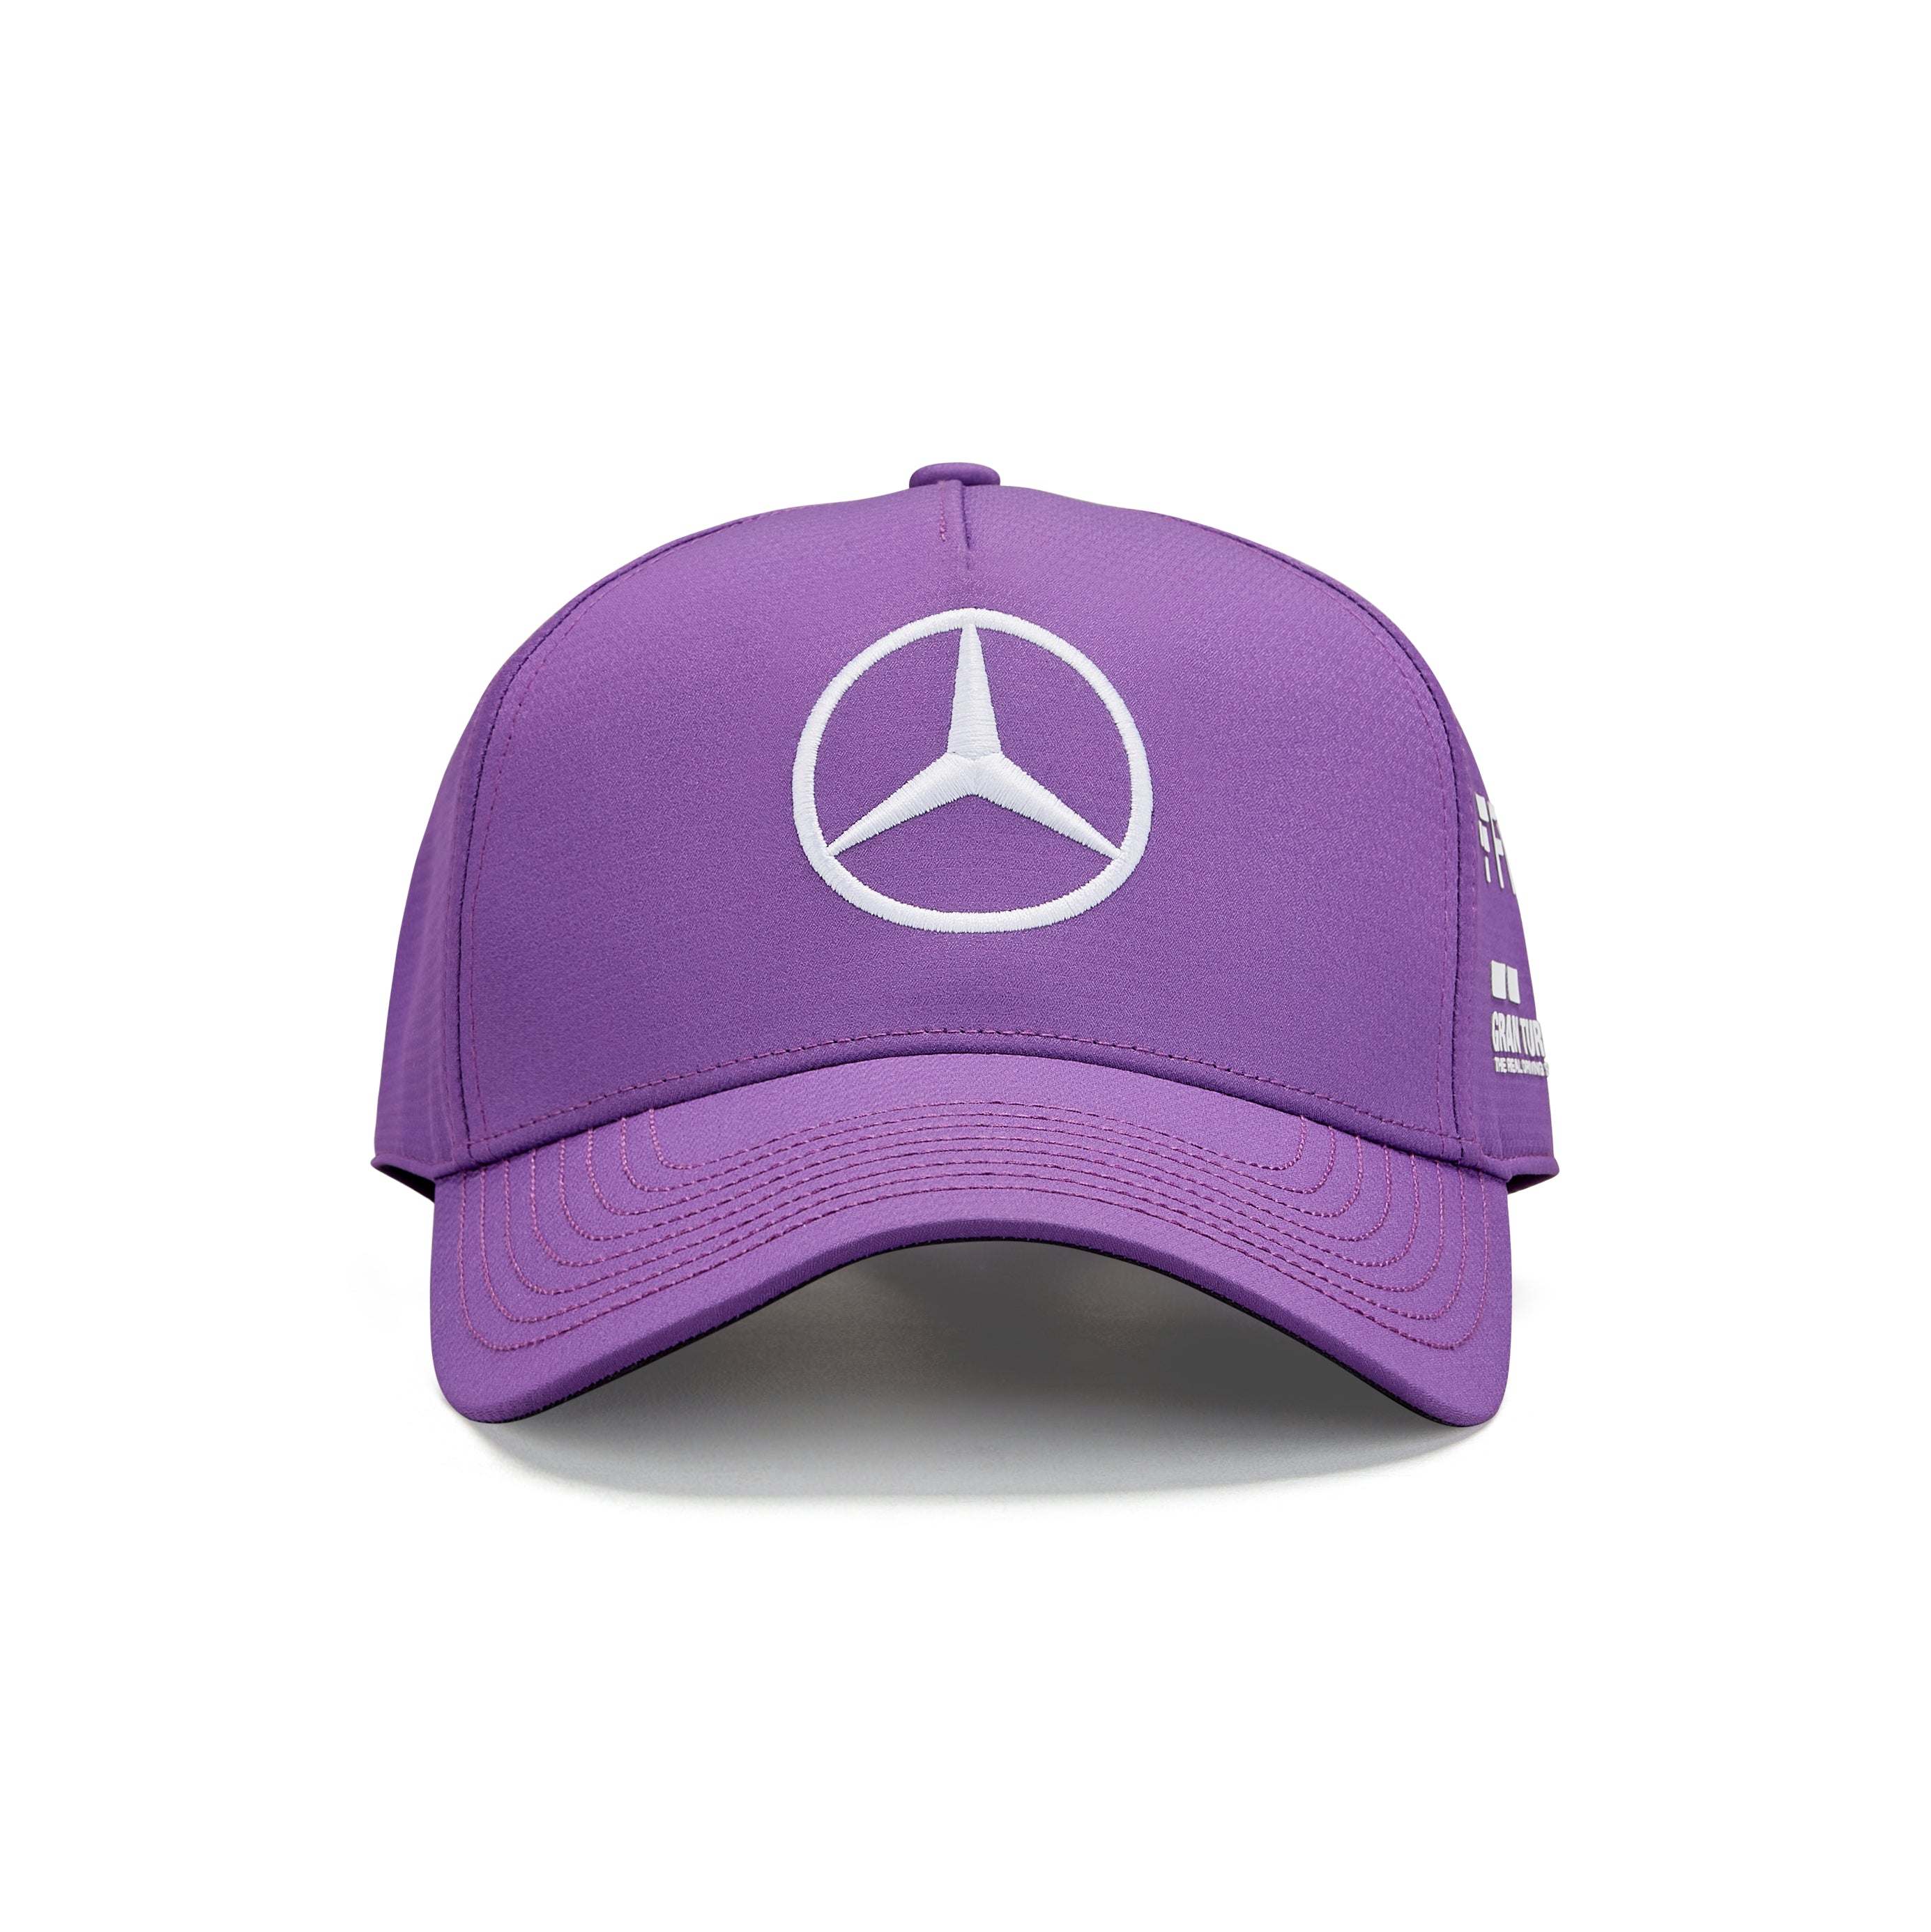 Mercedes AMG Petronas F1 Team Lewis Hamilton Baseball Hat Purple